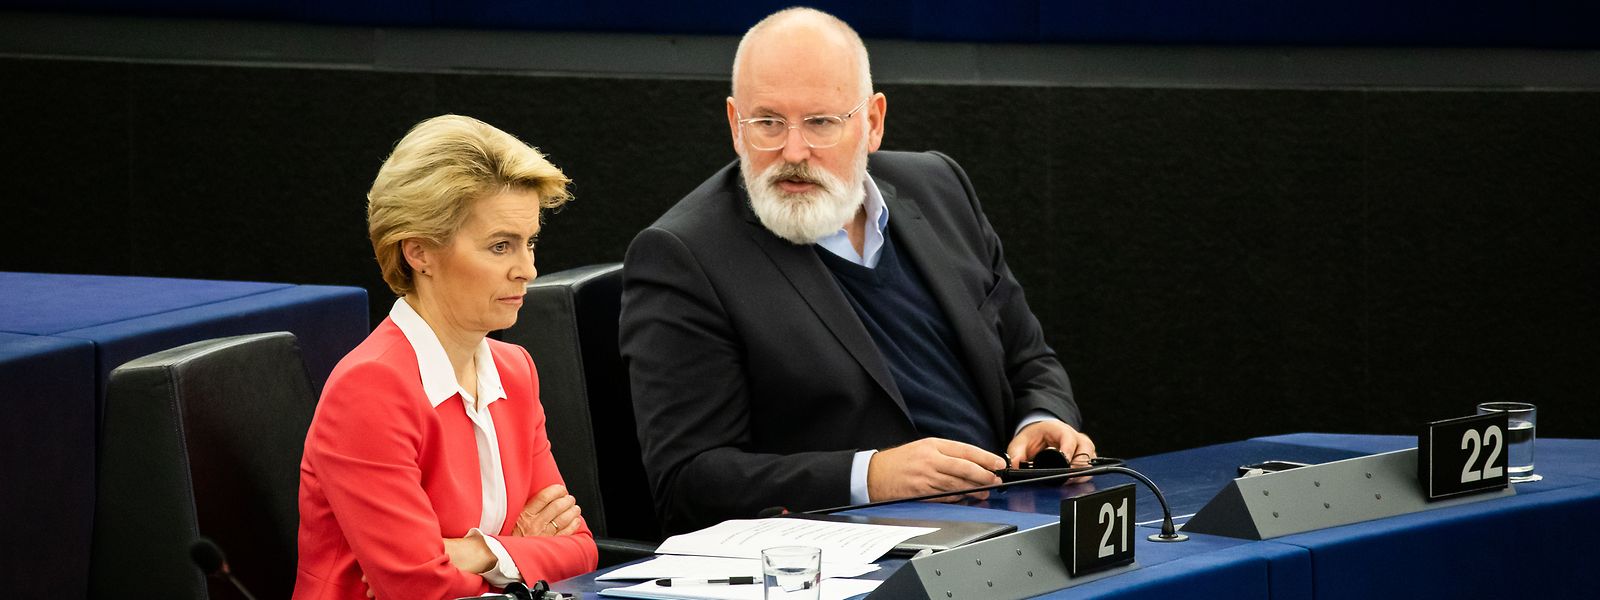 Die Präsidentin der Europäischen Kommission, Ursula von der Leyen, mit ihrem Vizepräsidenten Frans Timmermans. Timmermans gab am Donnerstag Einblick in die Klimaschutzpläne des Kabinetts.